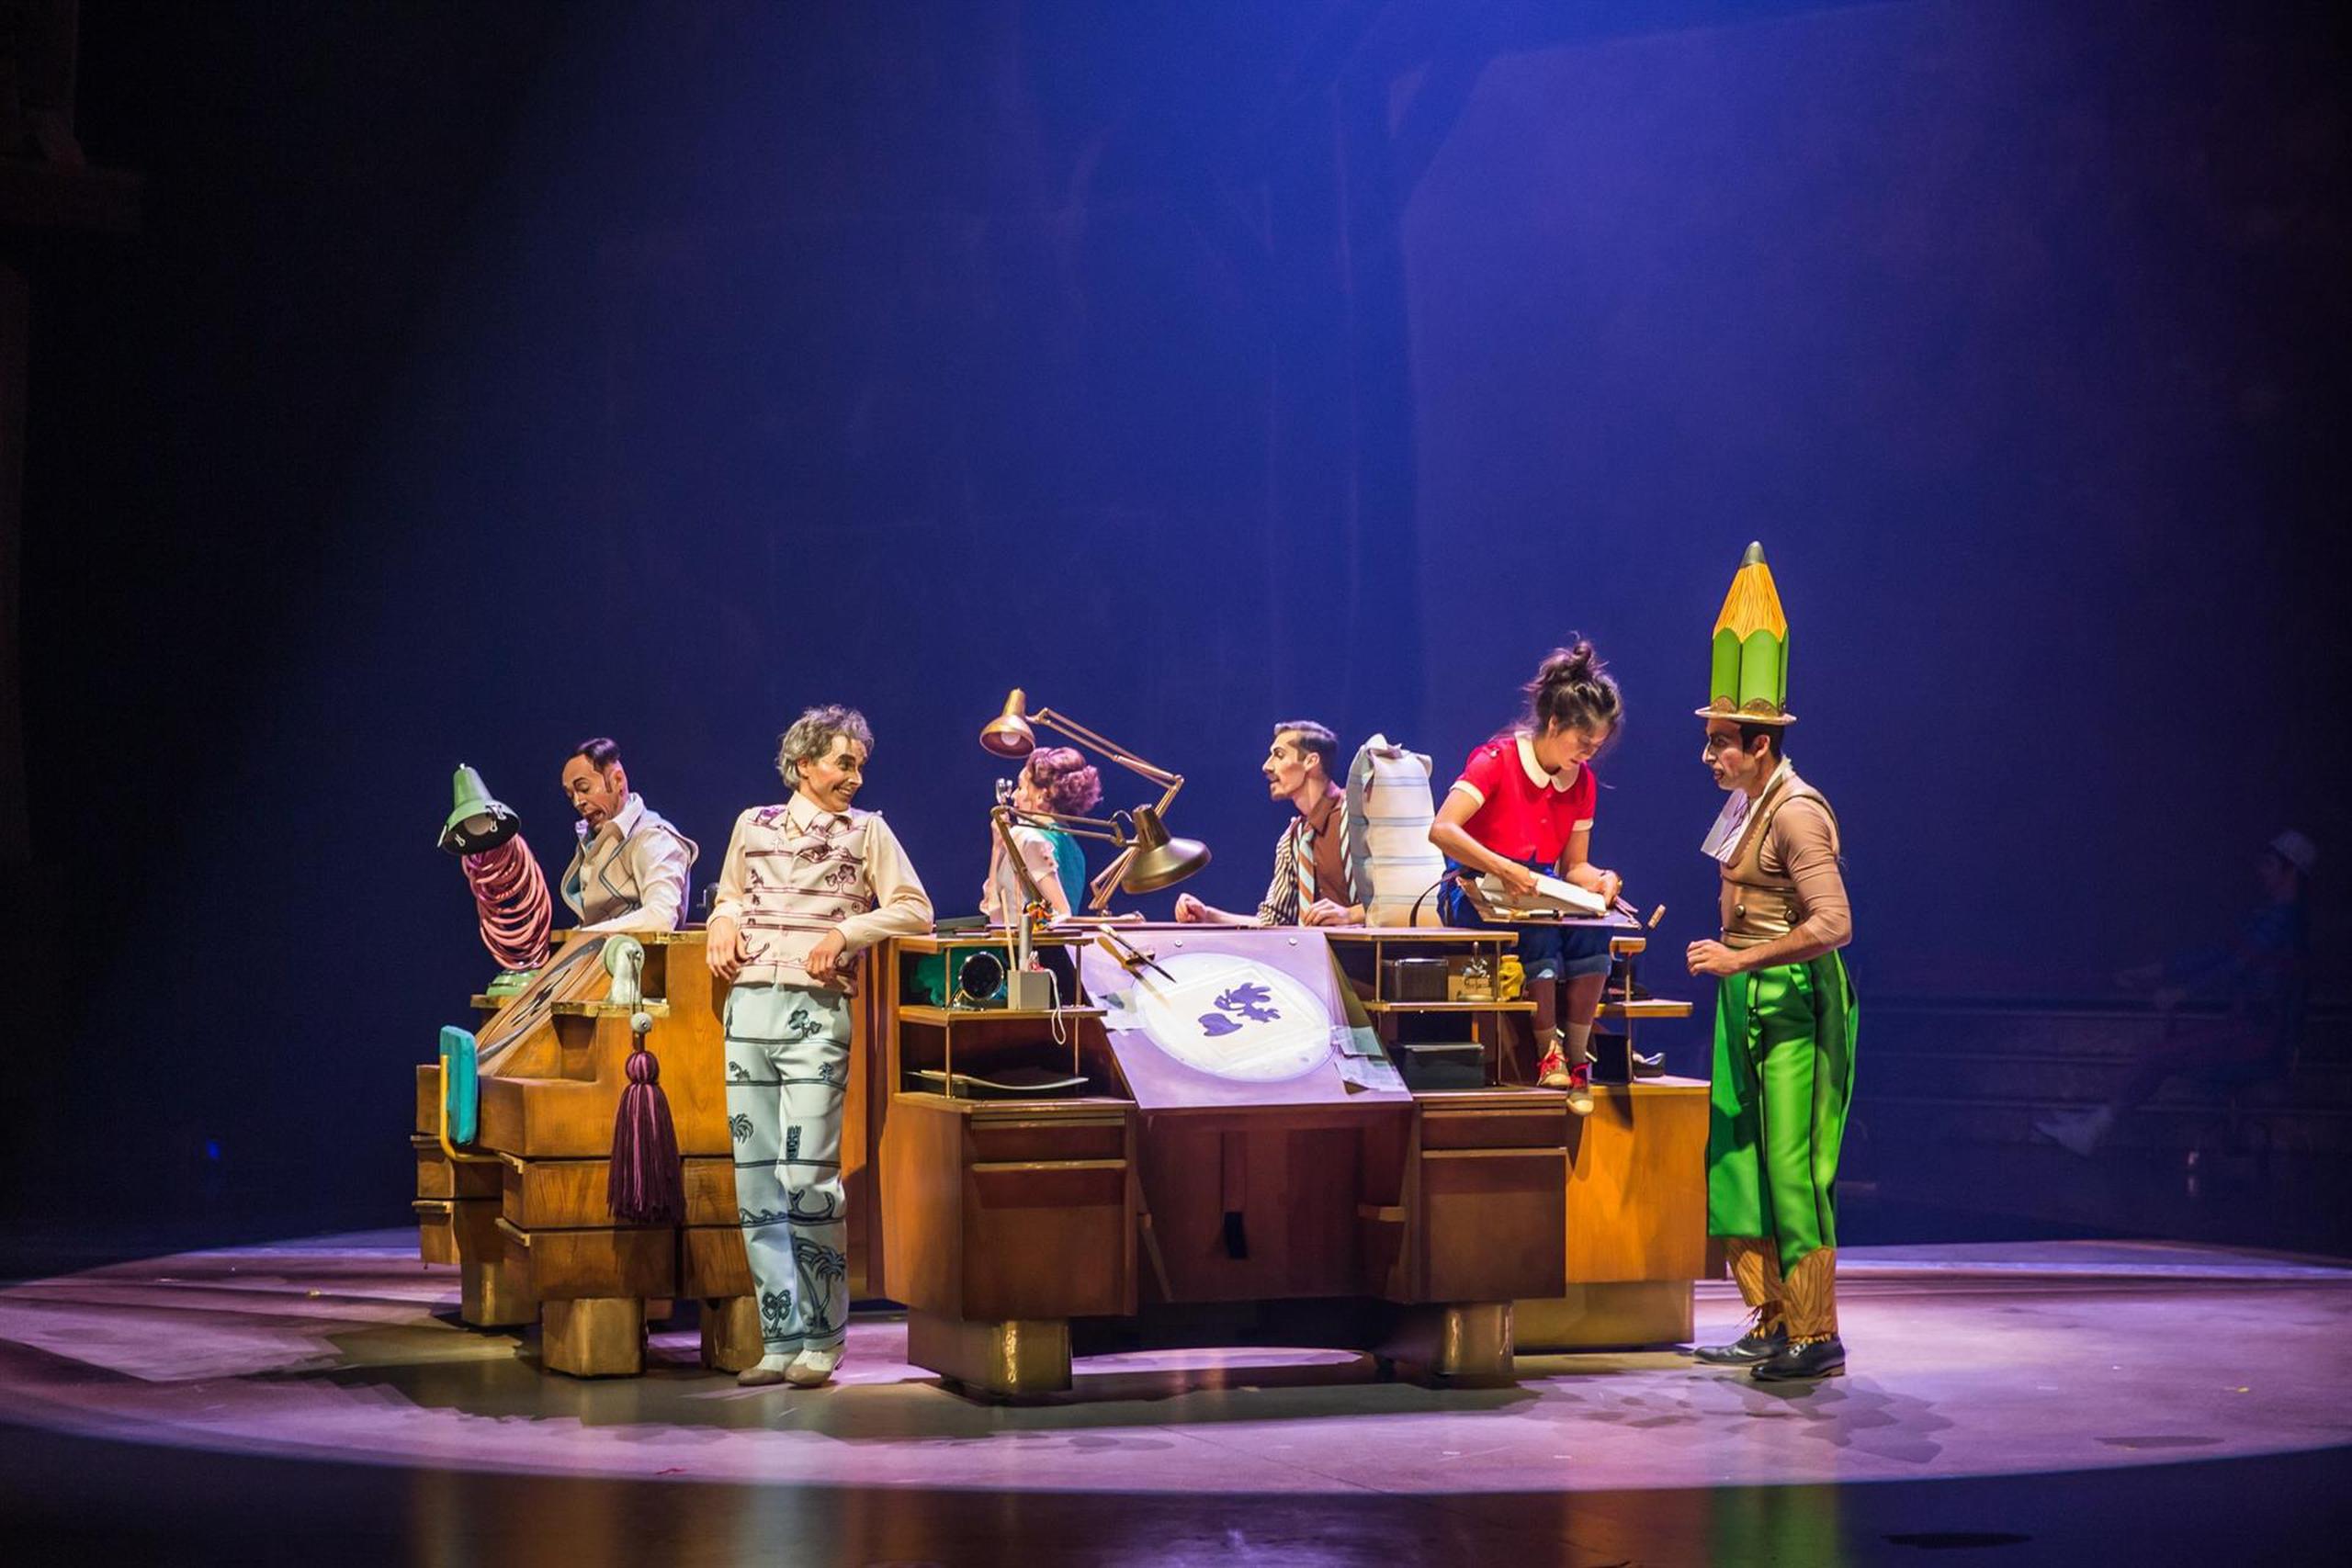 Foto cedida por Disney que muestra un momento del show "Drawn of Life" de Cirque du Soleil.